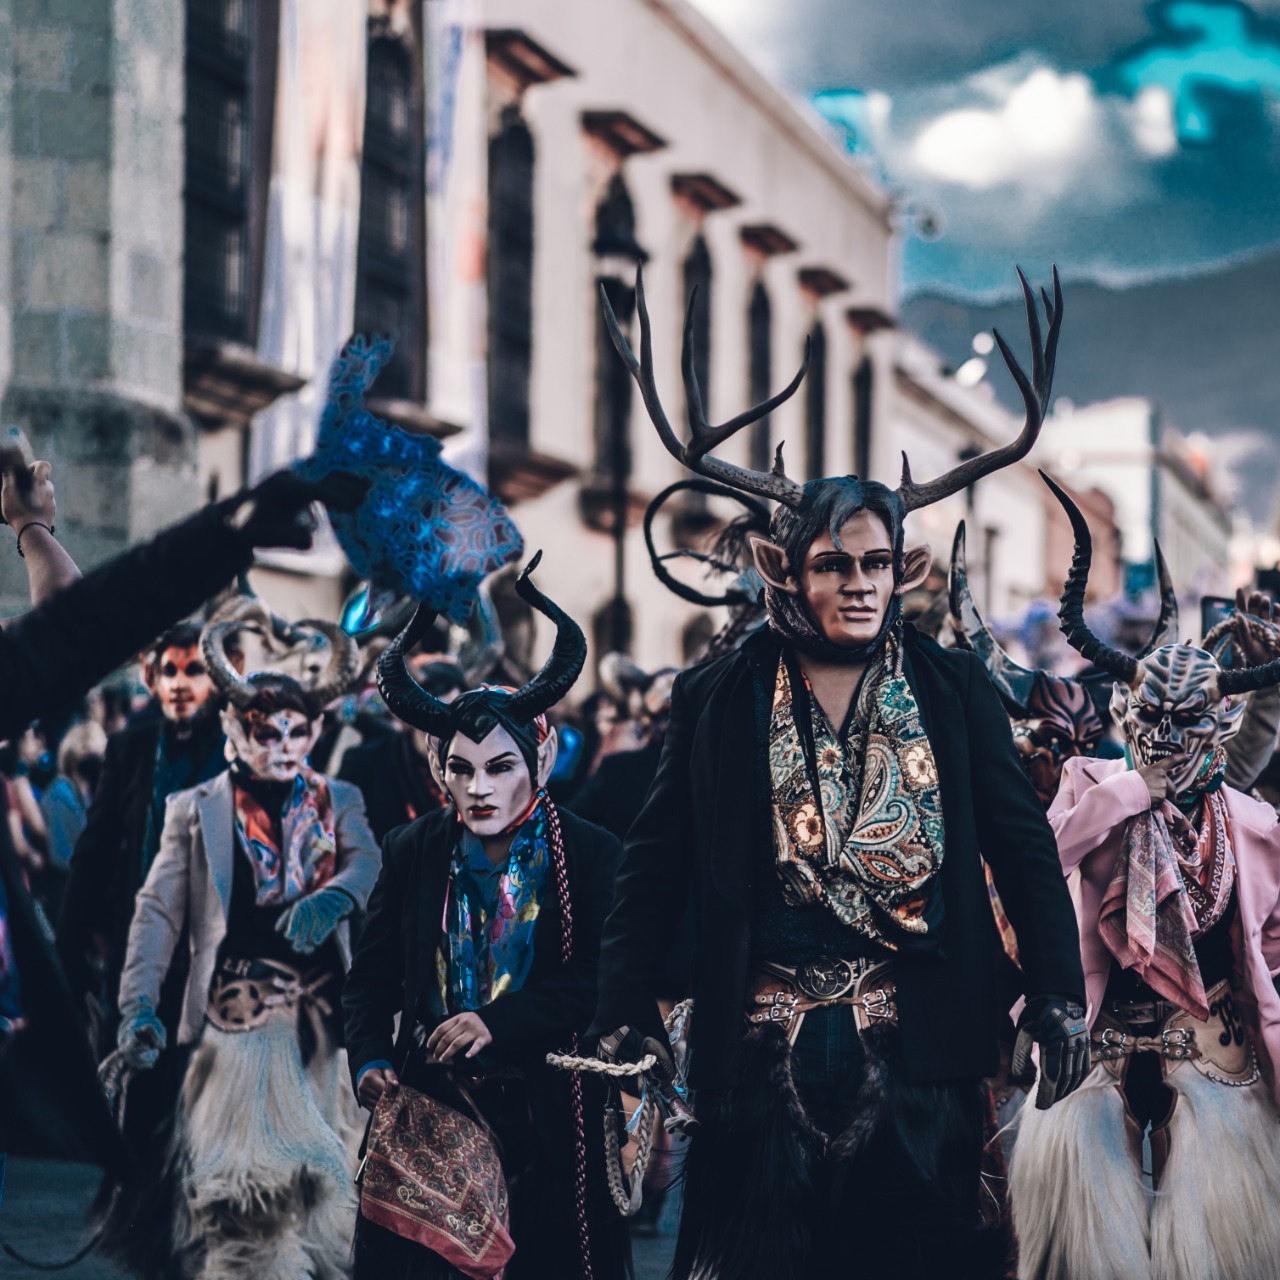 Los carnavales en Oaxaca México Desconocido